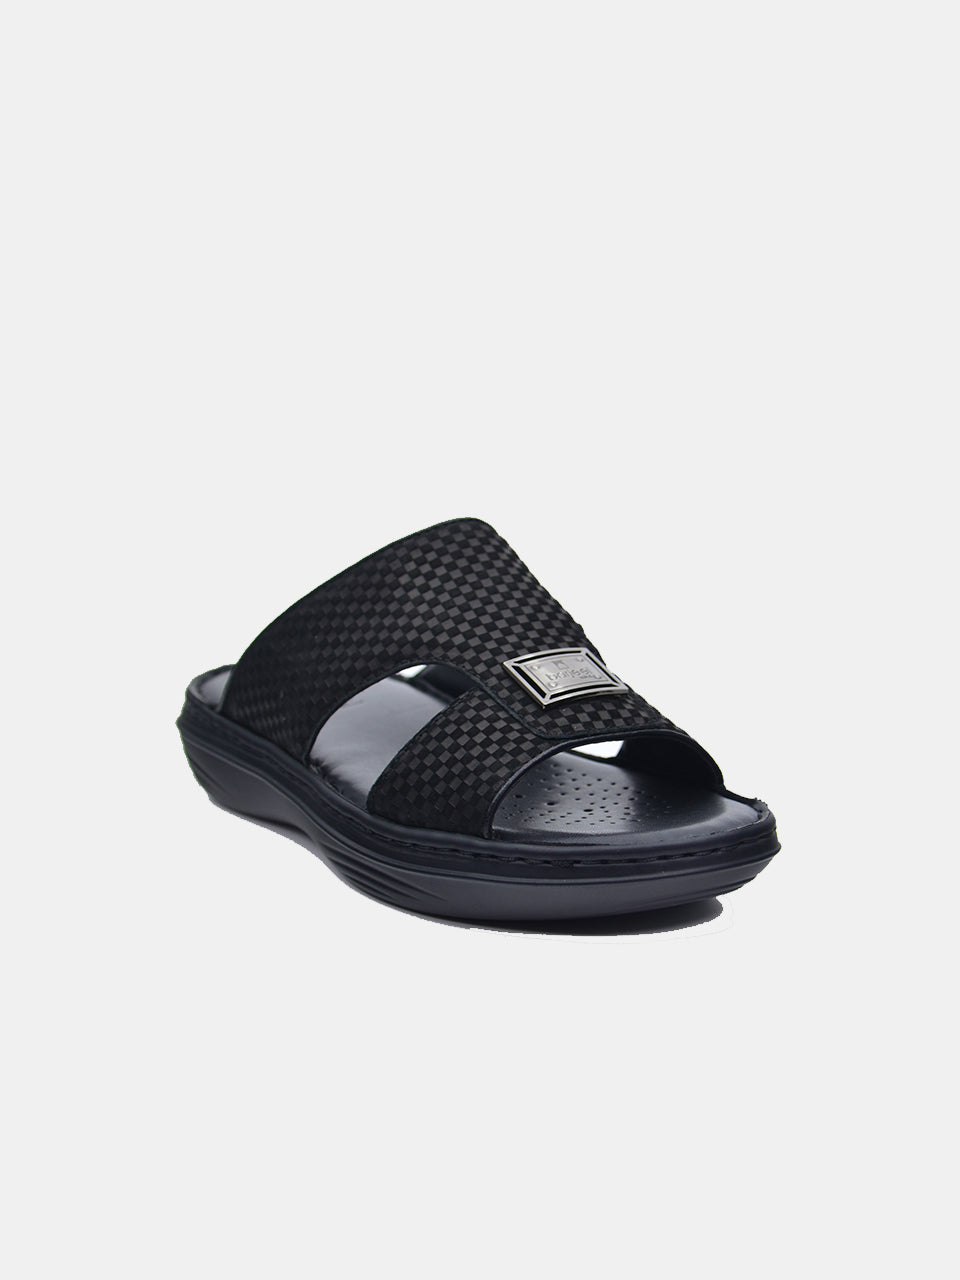 Barjeel Uno 21410-3 Men's Arabic Sandals #color_Black